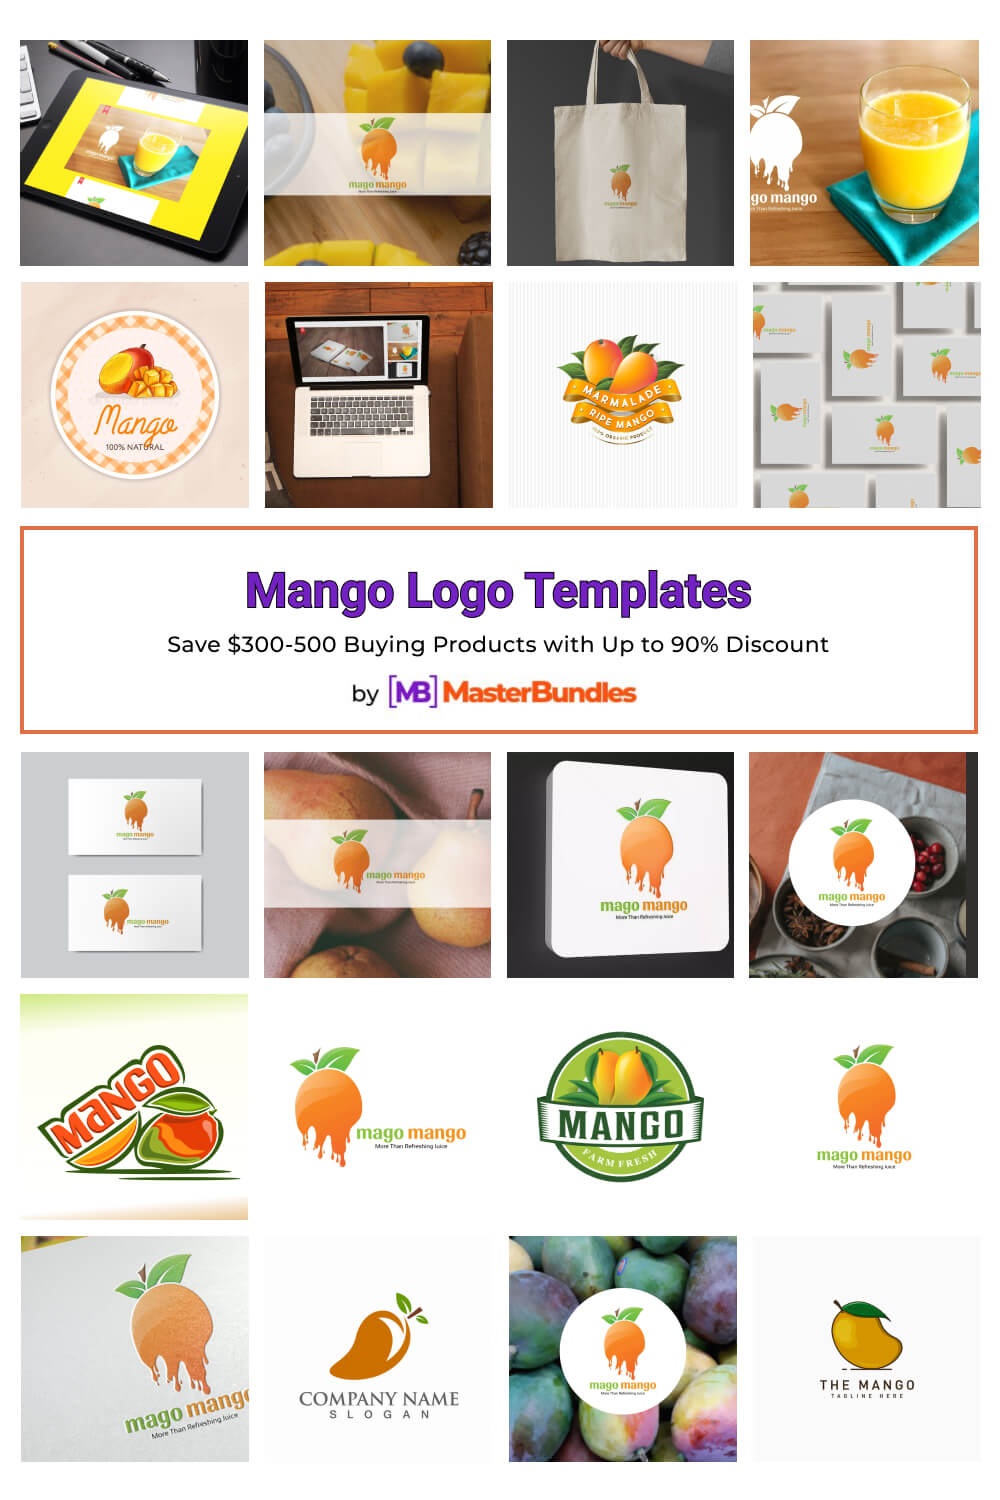 mango logo templates pinterest image.